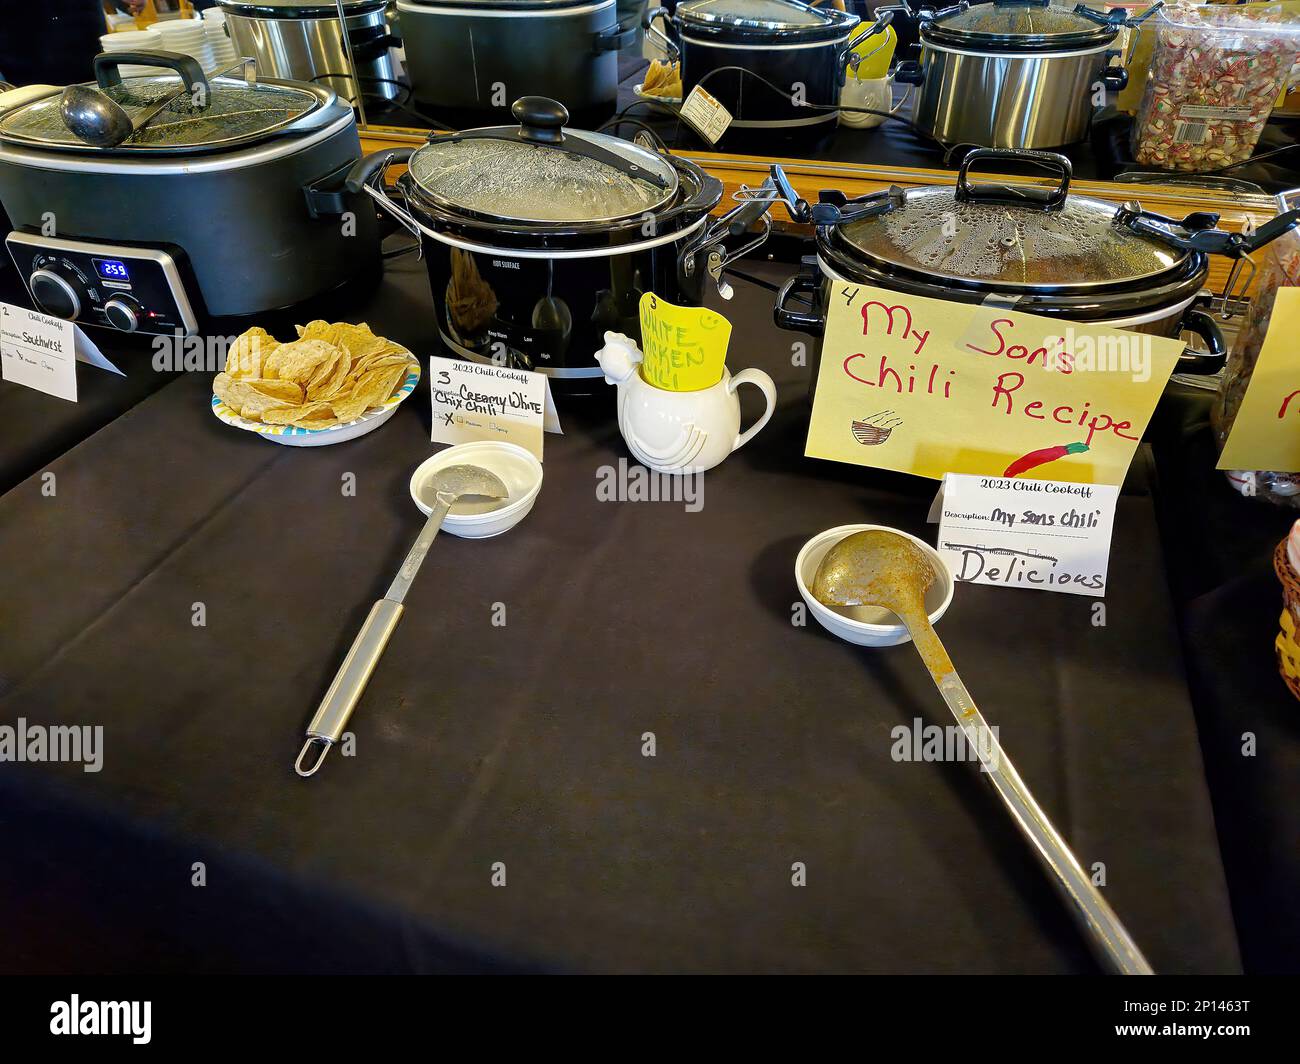 Eine Reihe Crockpots mit Chips und Besteck für einen Chili-Kochwettbewerb Stockfoto